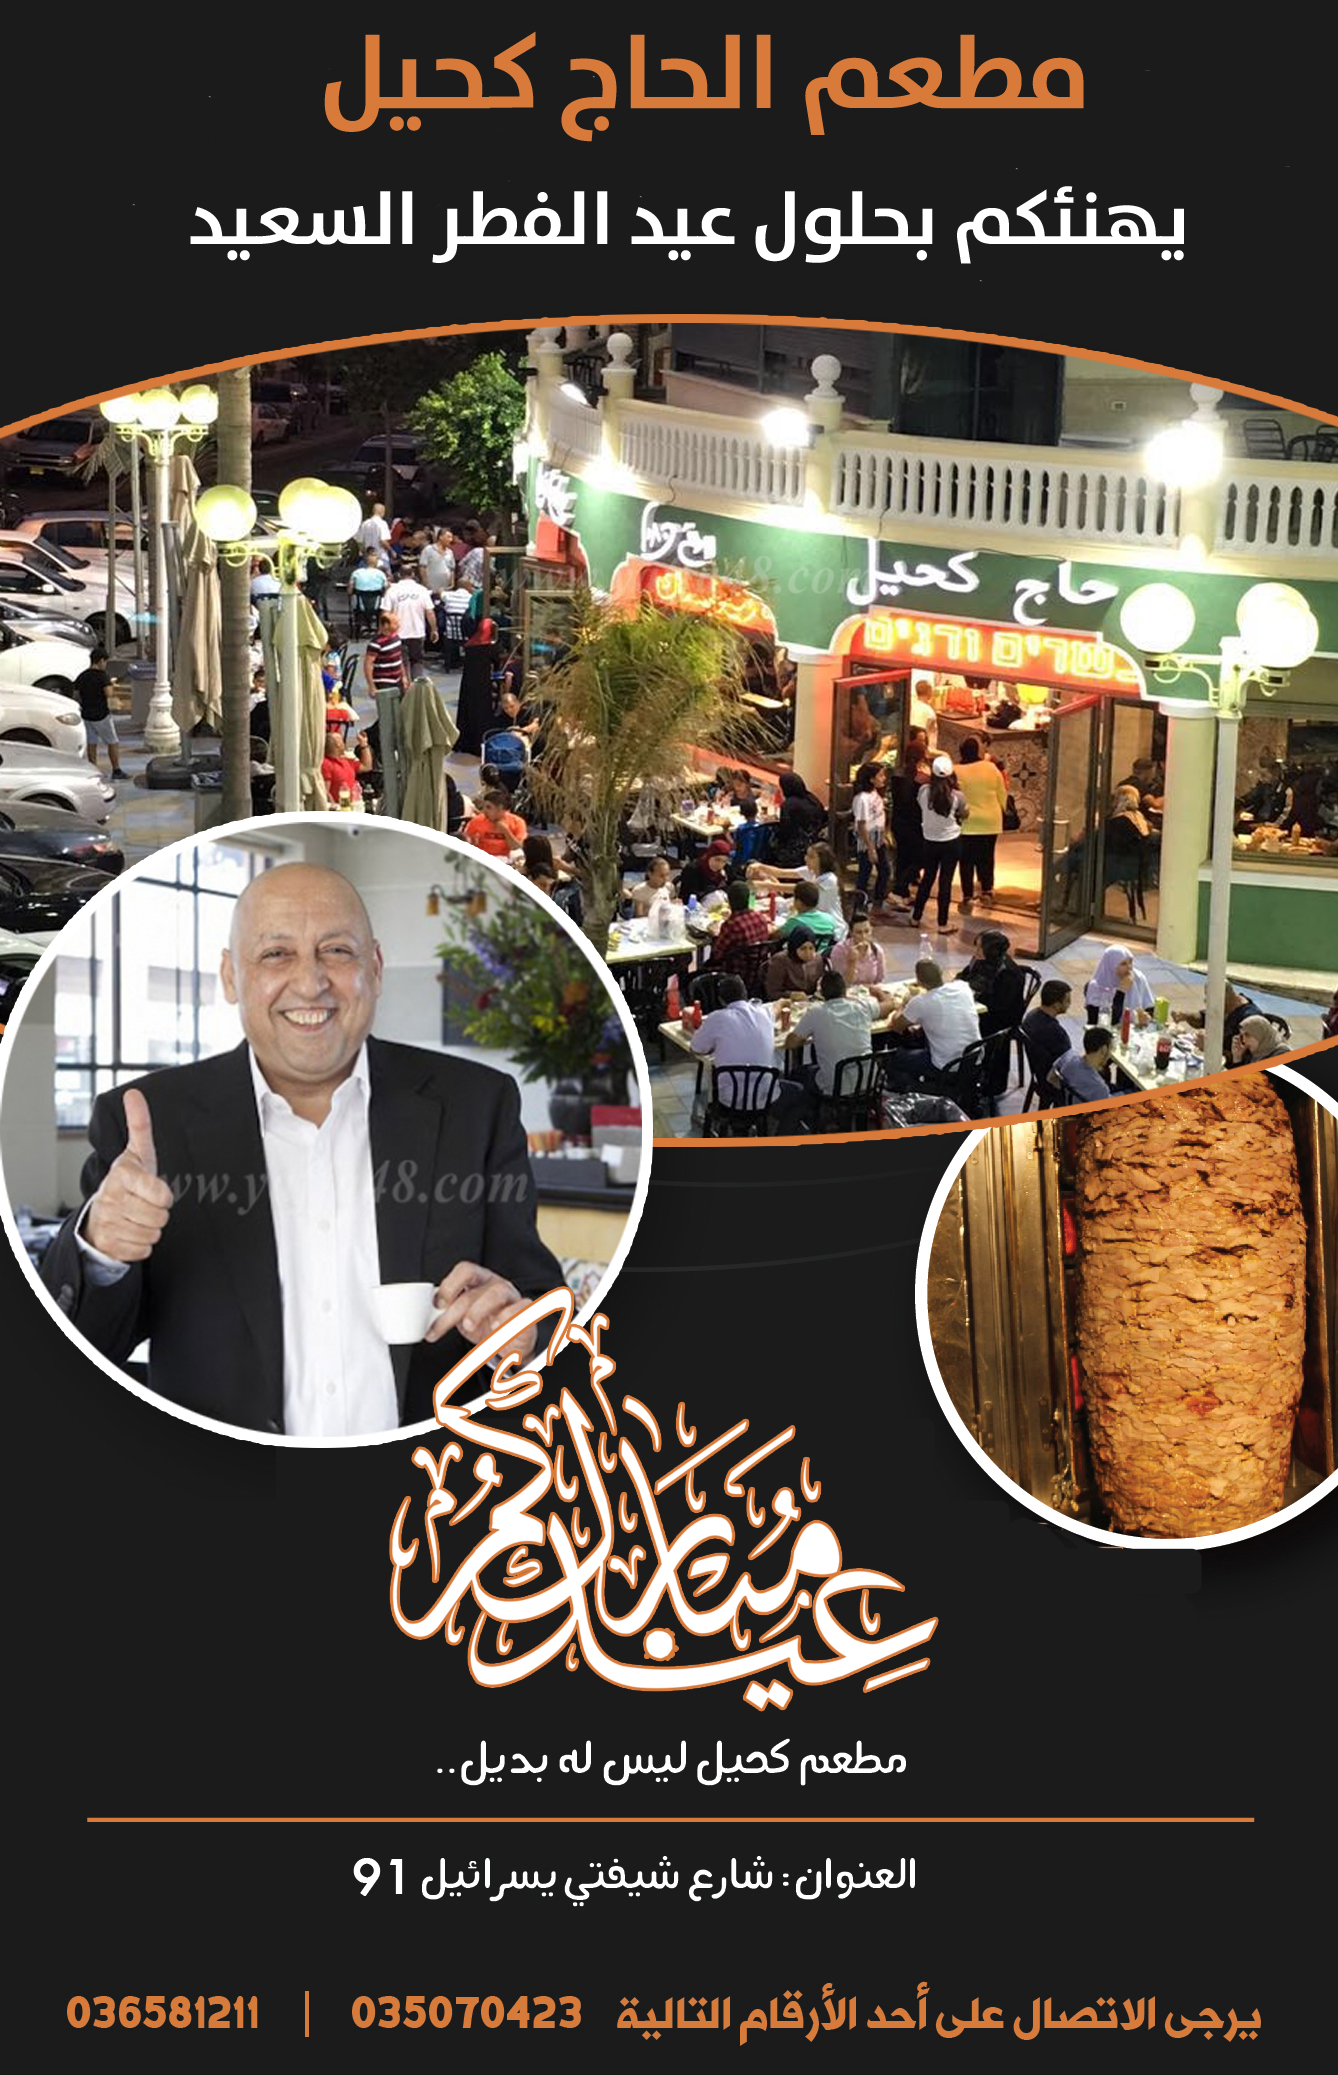 تهنئة من مطعم حاج كحيل في مدينة يافا بمناسبة العيد 